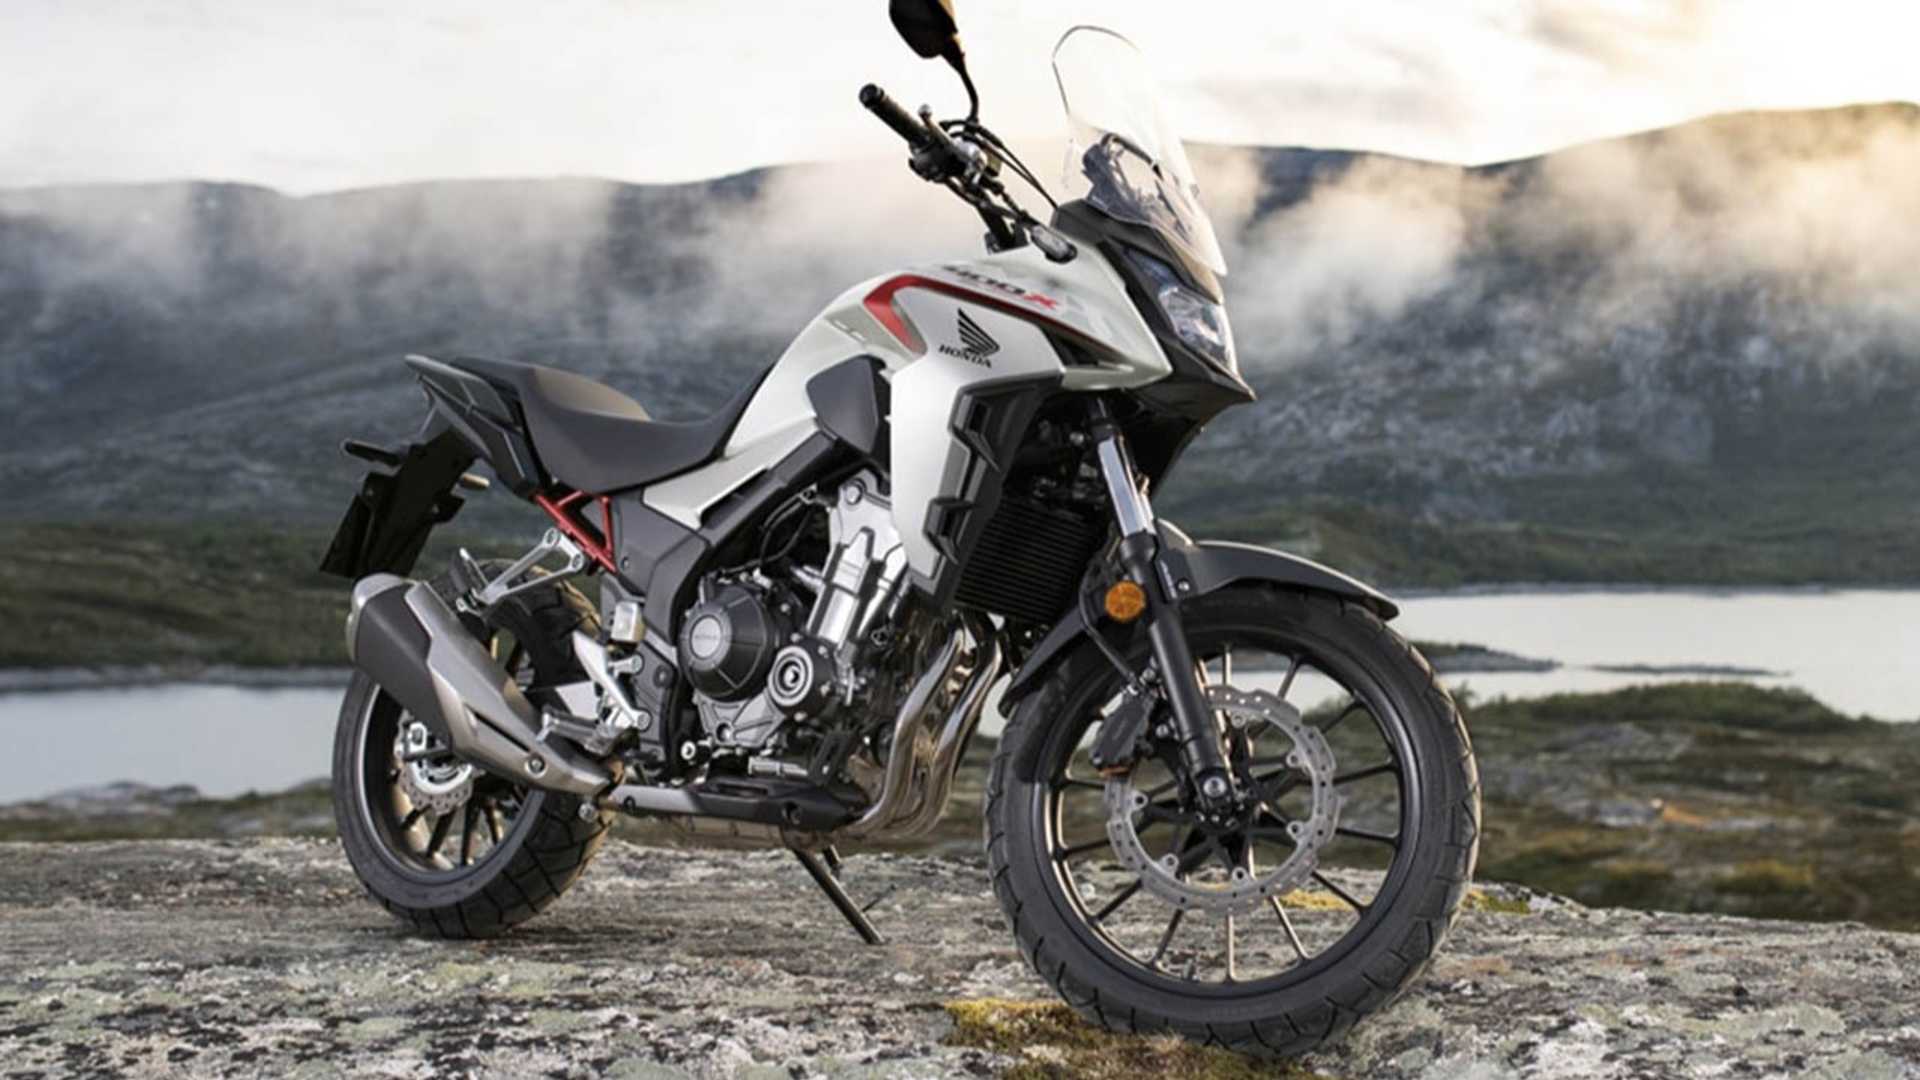 Neues kleine ADV Motorrad von Honda
- auch in der MOTORRAD NACHRICHTEN APP